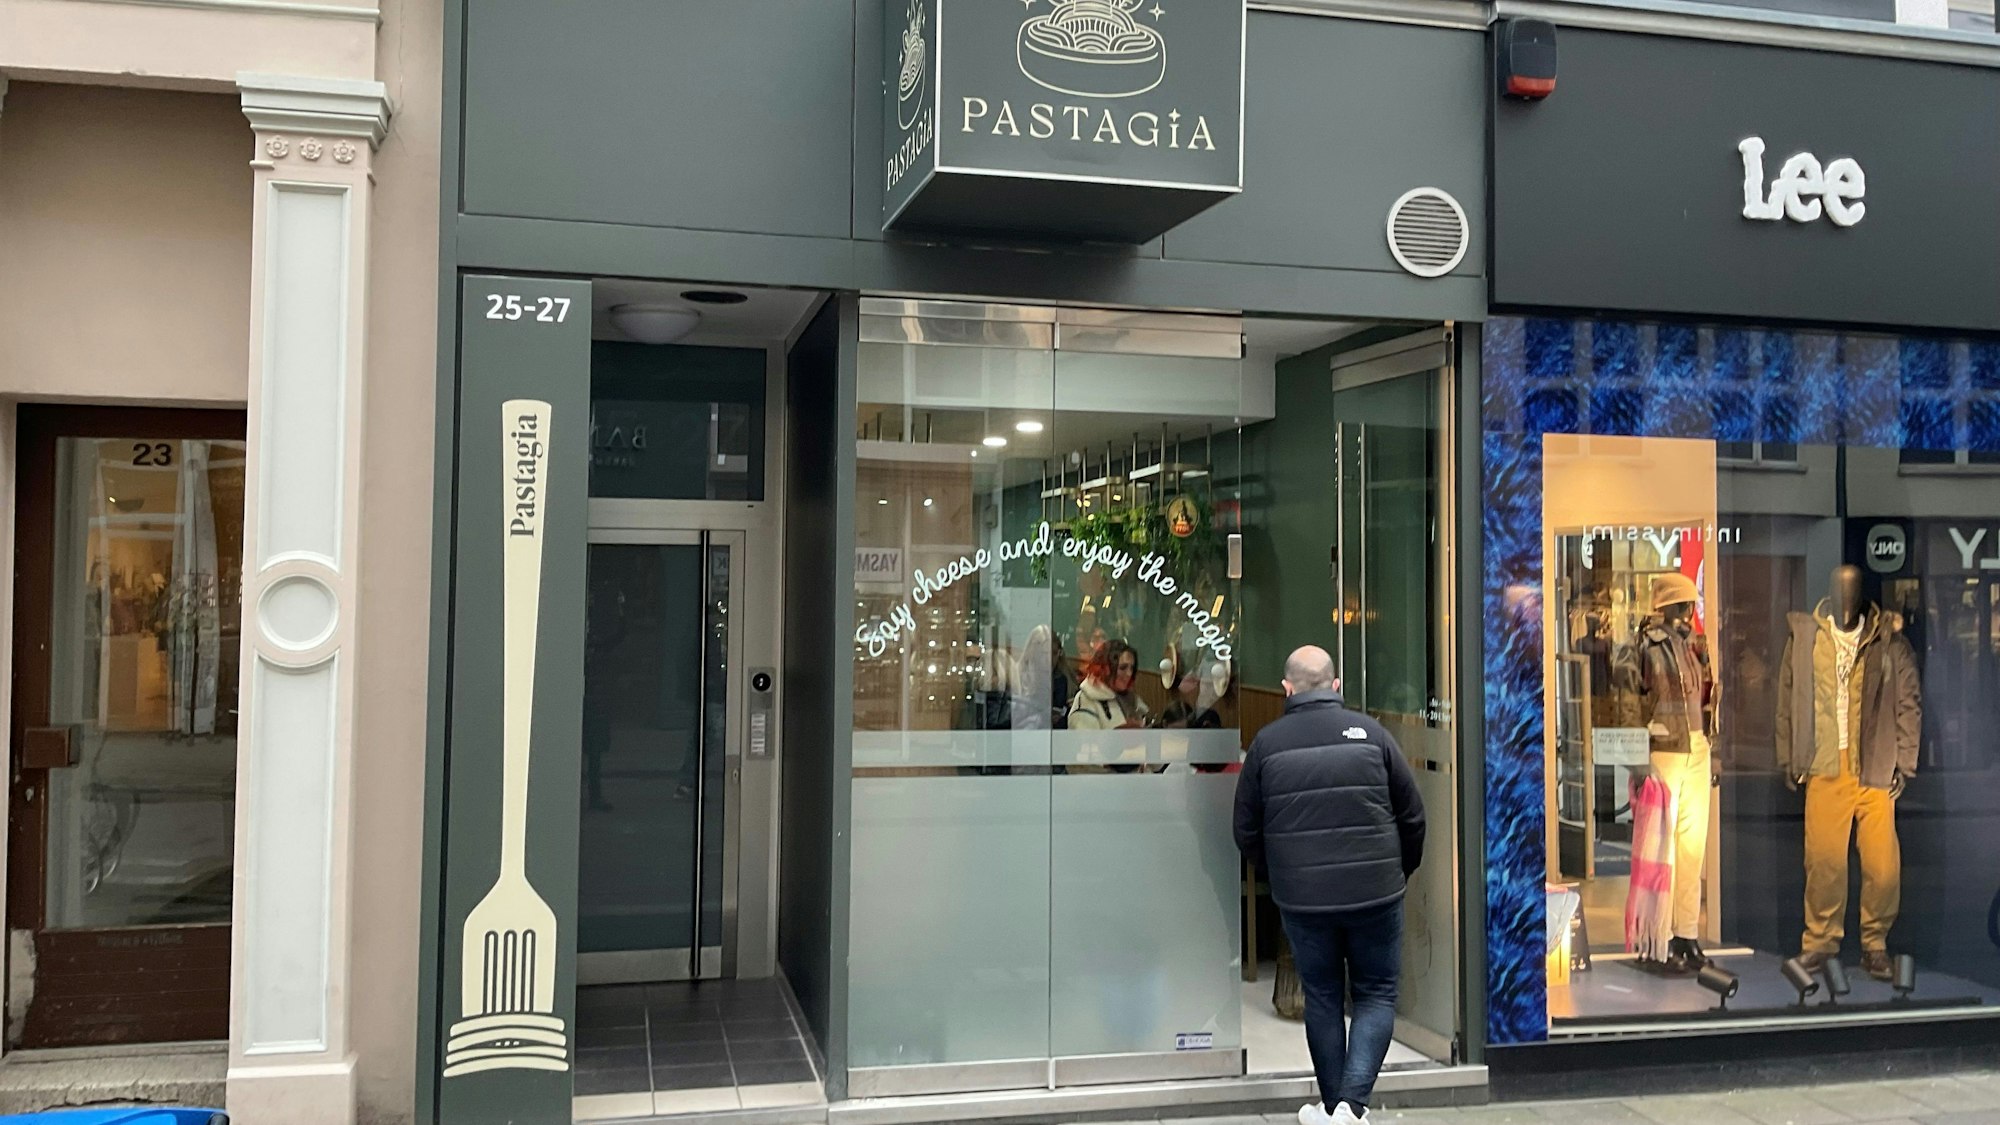 Außenansicht eines neuen Pasta-Lokal auf der Ehrenstraße